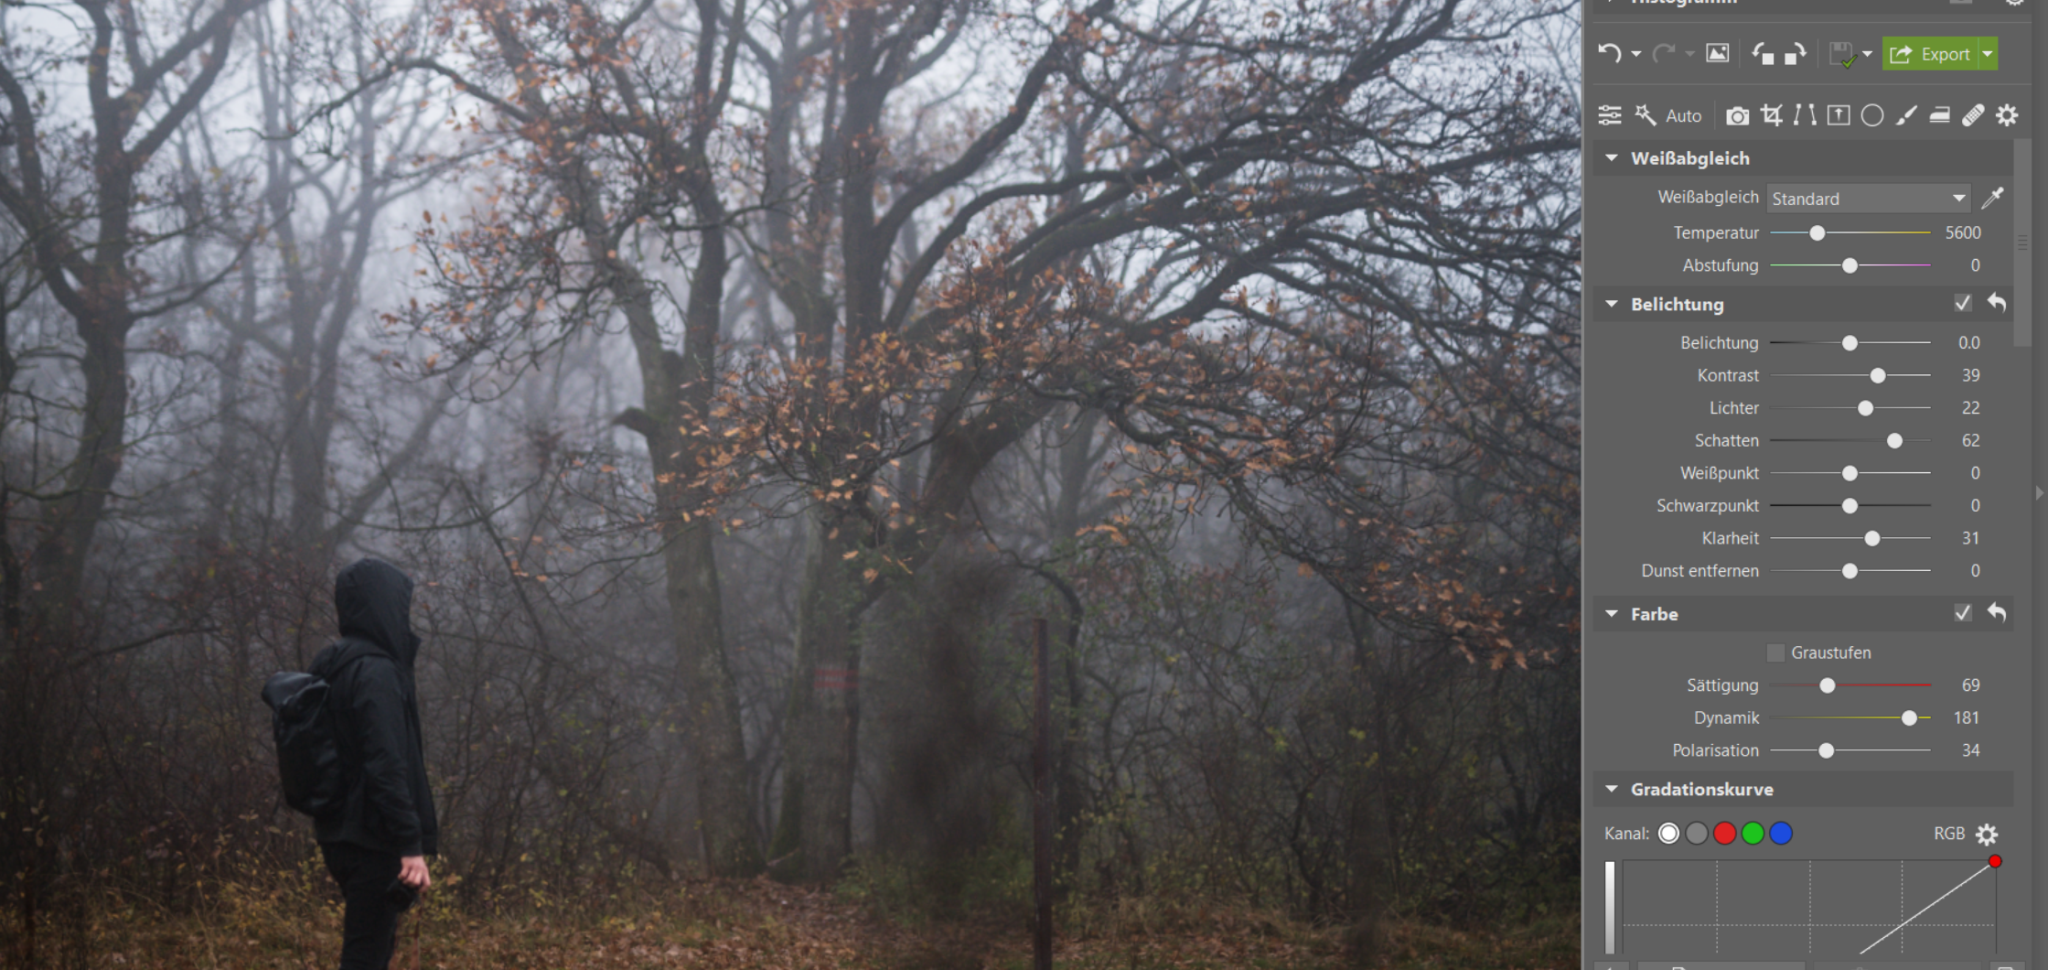 Fotografieren im Nebel: Verleihen Sie Ihren Fotos eine düstere Atmosphäre. Wir geben Tipps zum Fotografieren und Bearbeiten 